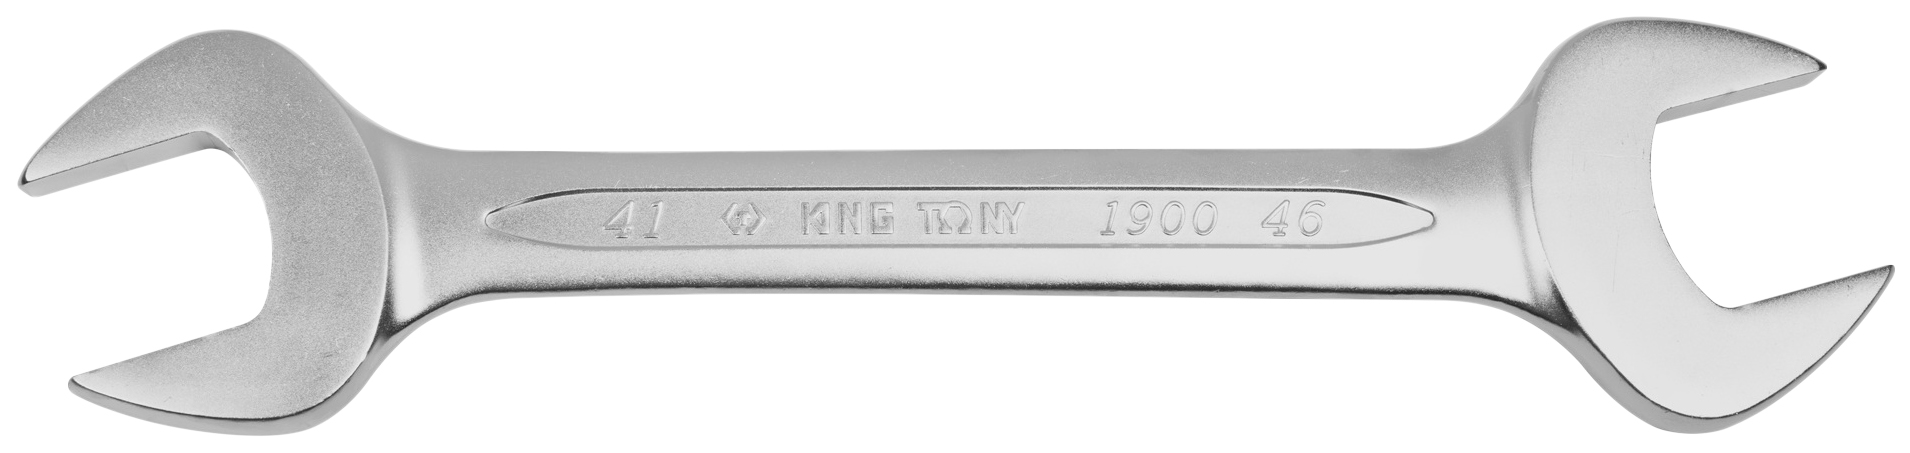 Рожковый ключ KING TONY 19004146 щипцы для демонтажа топливных линий king tony